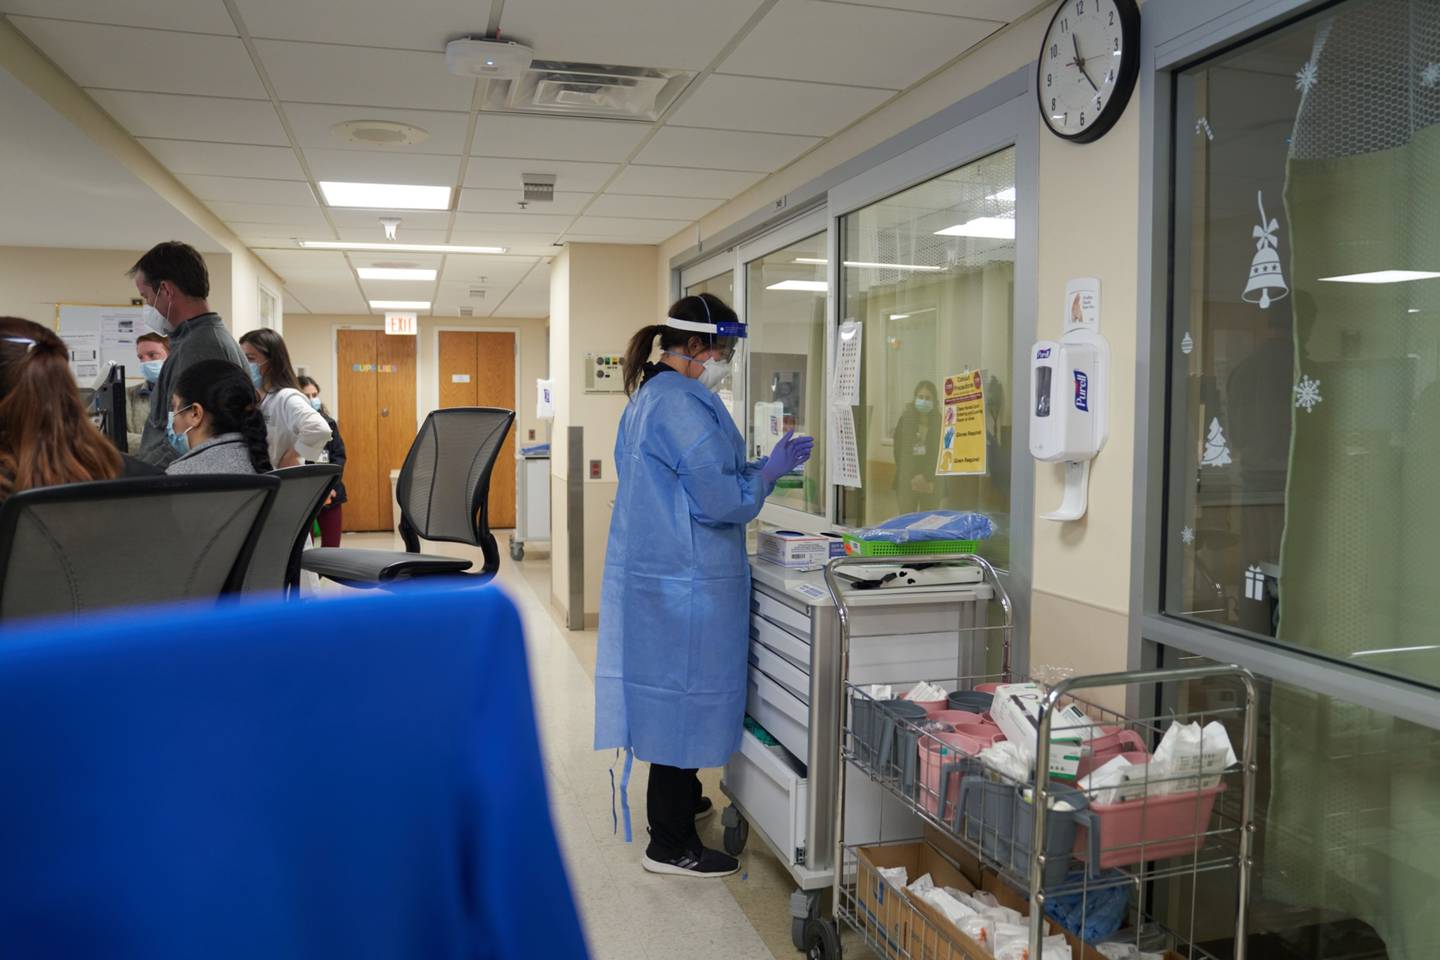 Un trabajador sanitario se prepara para entrar en la habitación de un paciente con Covid-19 en la planta de la Unidad de Cuidados Intensivos (UCI) del Hospital de Hartford en Hartford, Connecticut, Estados Unidos, el lunes 31 de enero de 2022. Fotógrafo: Allison Dinner/Bloomberg